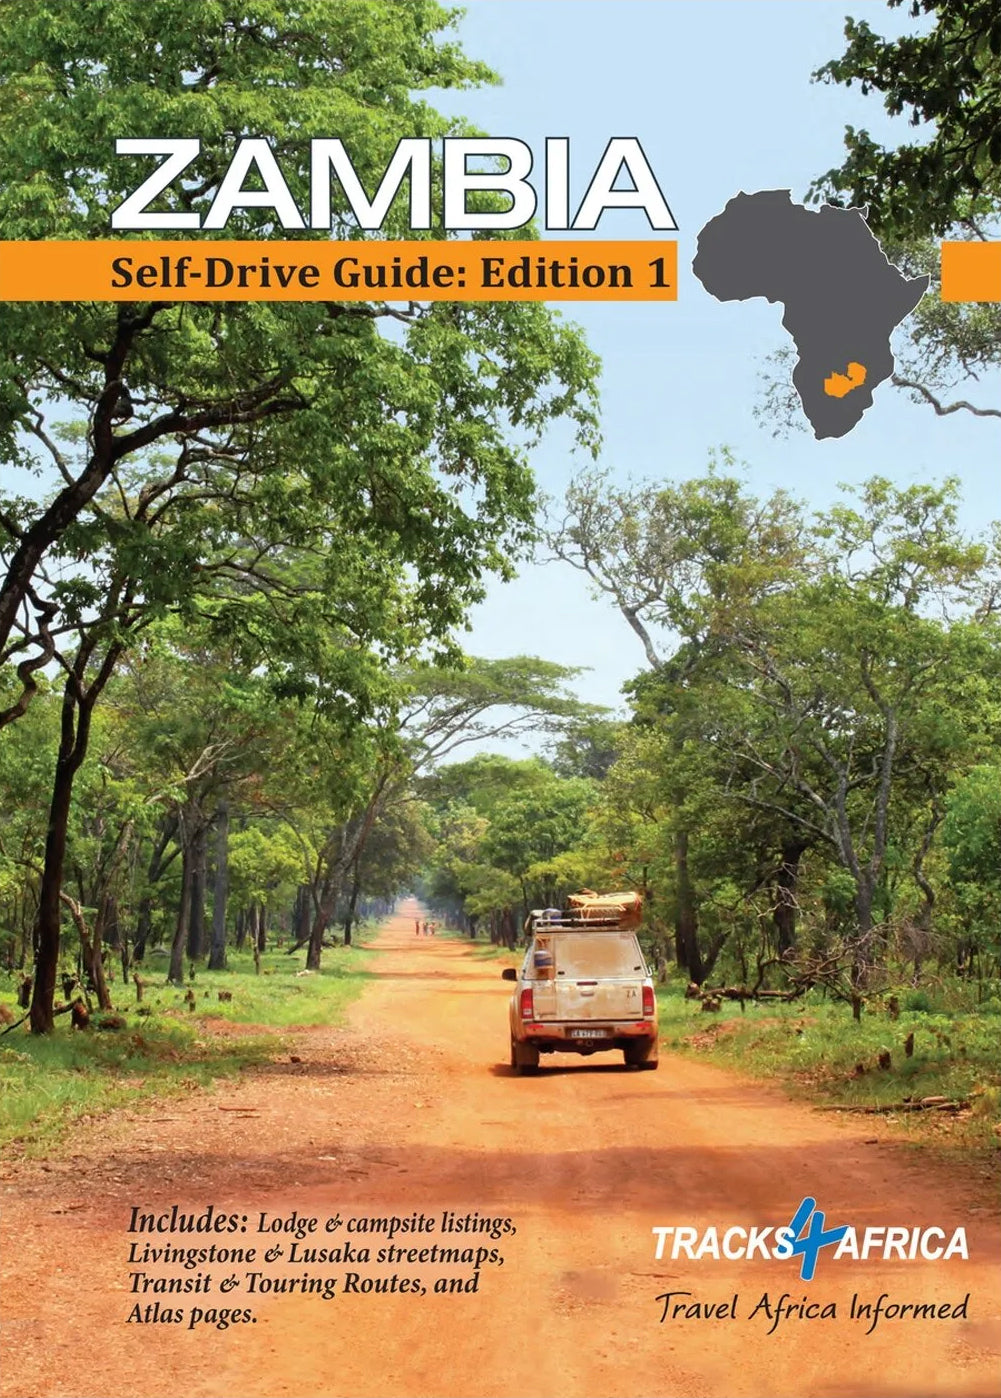 Zambia Self-Drive Guide: Edition 1